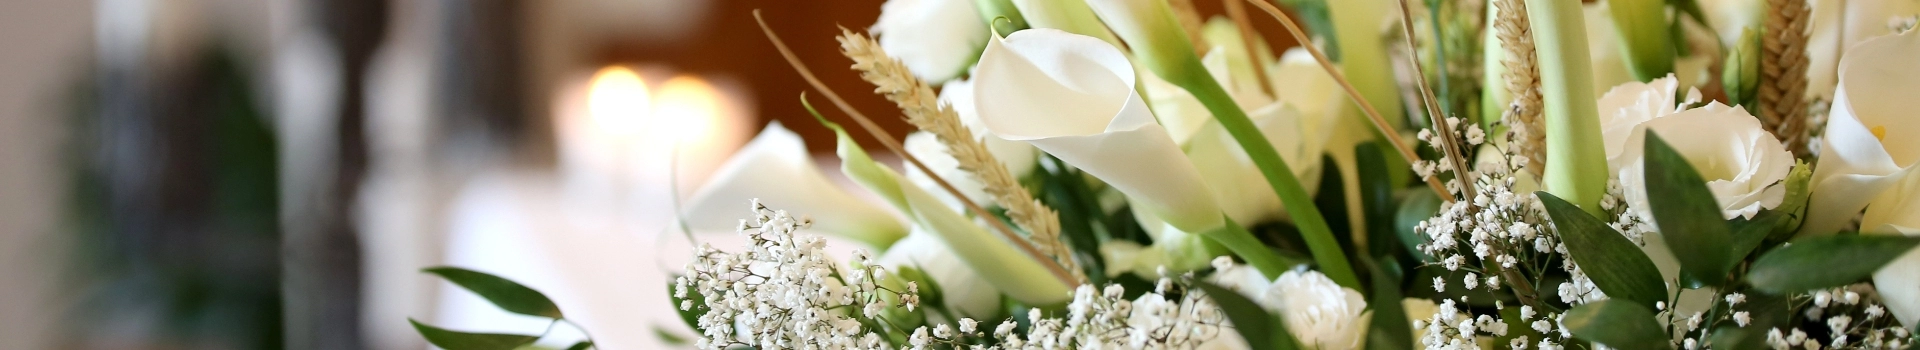 biało zielony bukiet kwiatów